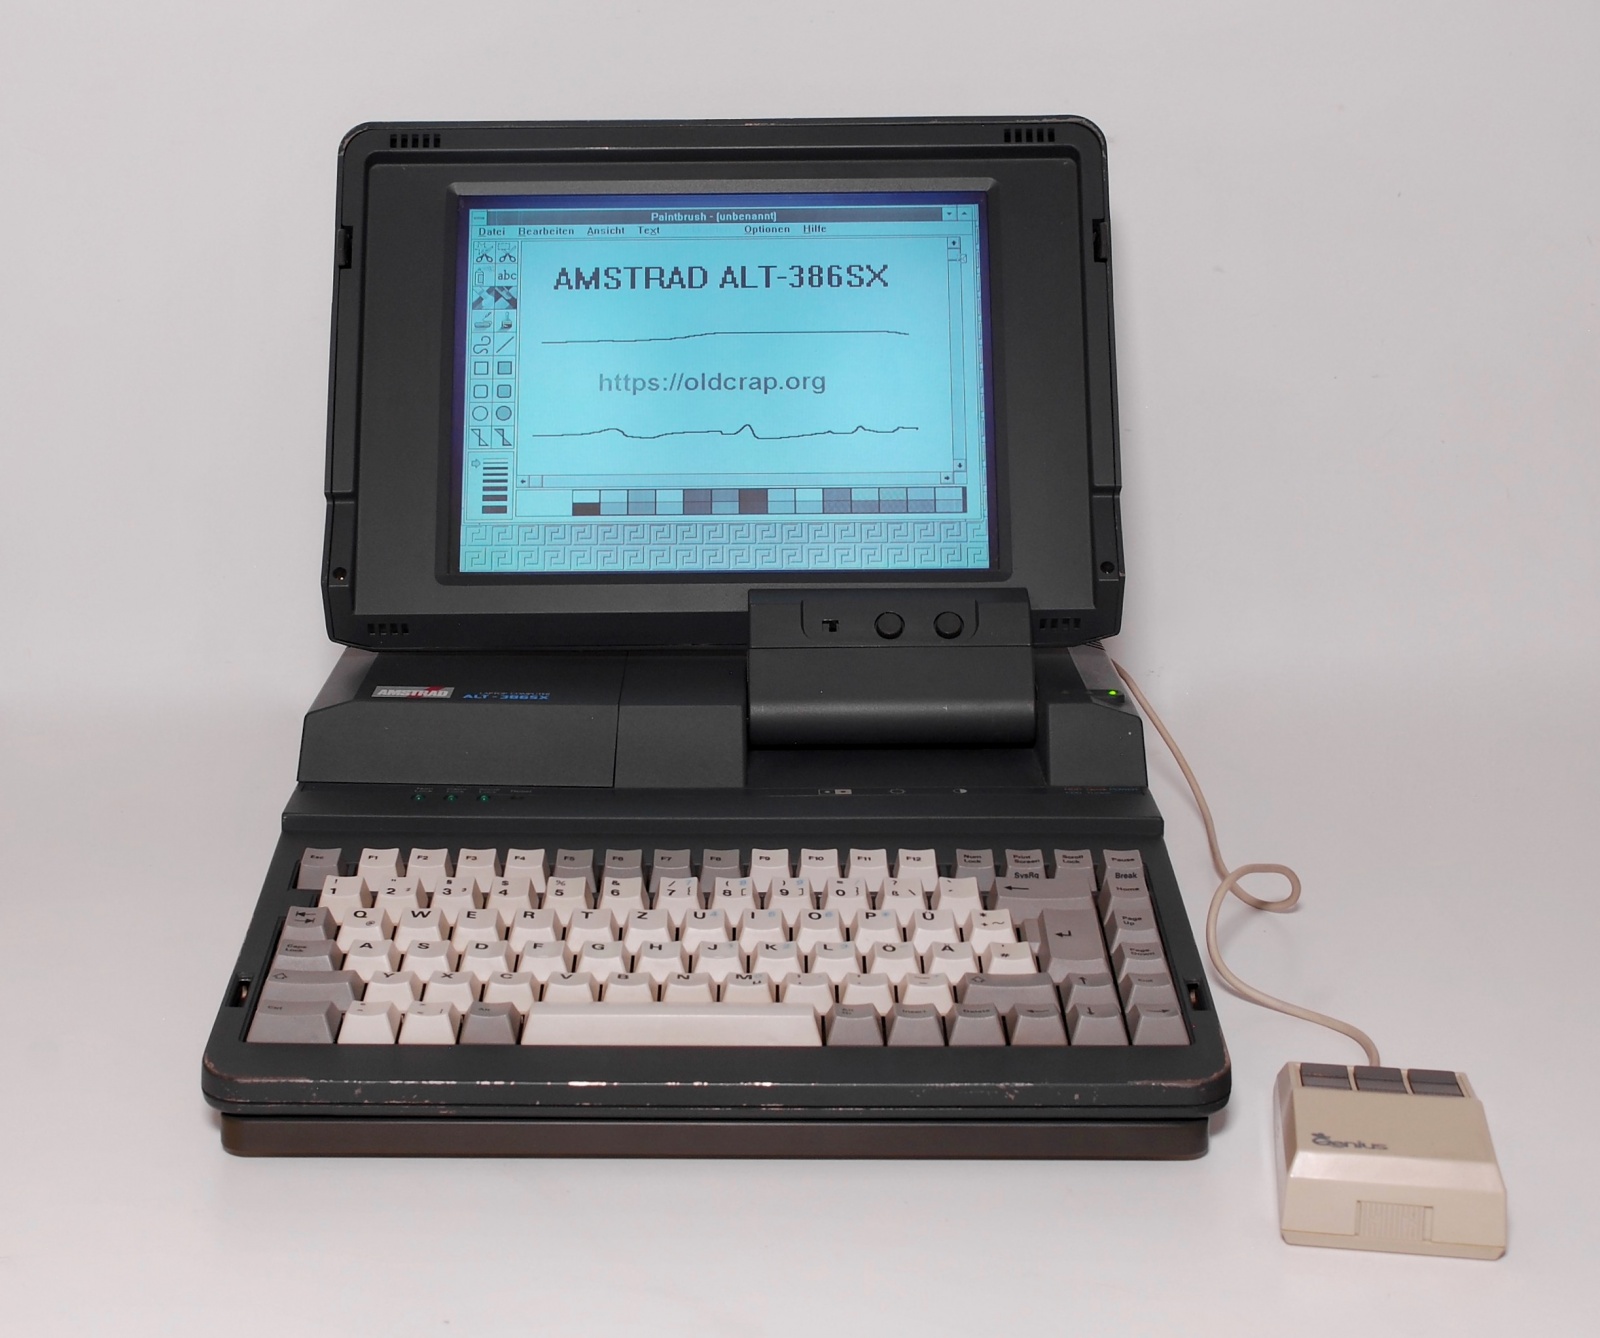 7 килограммов портативности, или ноутбук Amstrad ALT-386SX из 1988 года. Часть 1 - 3